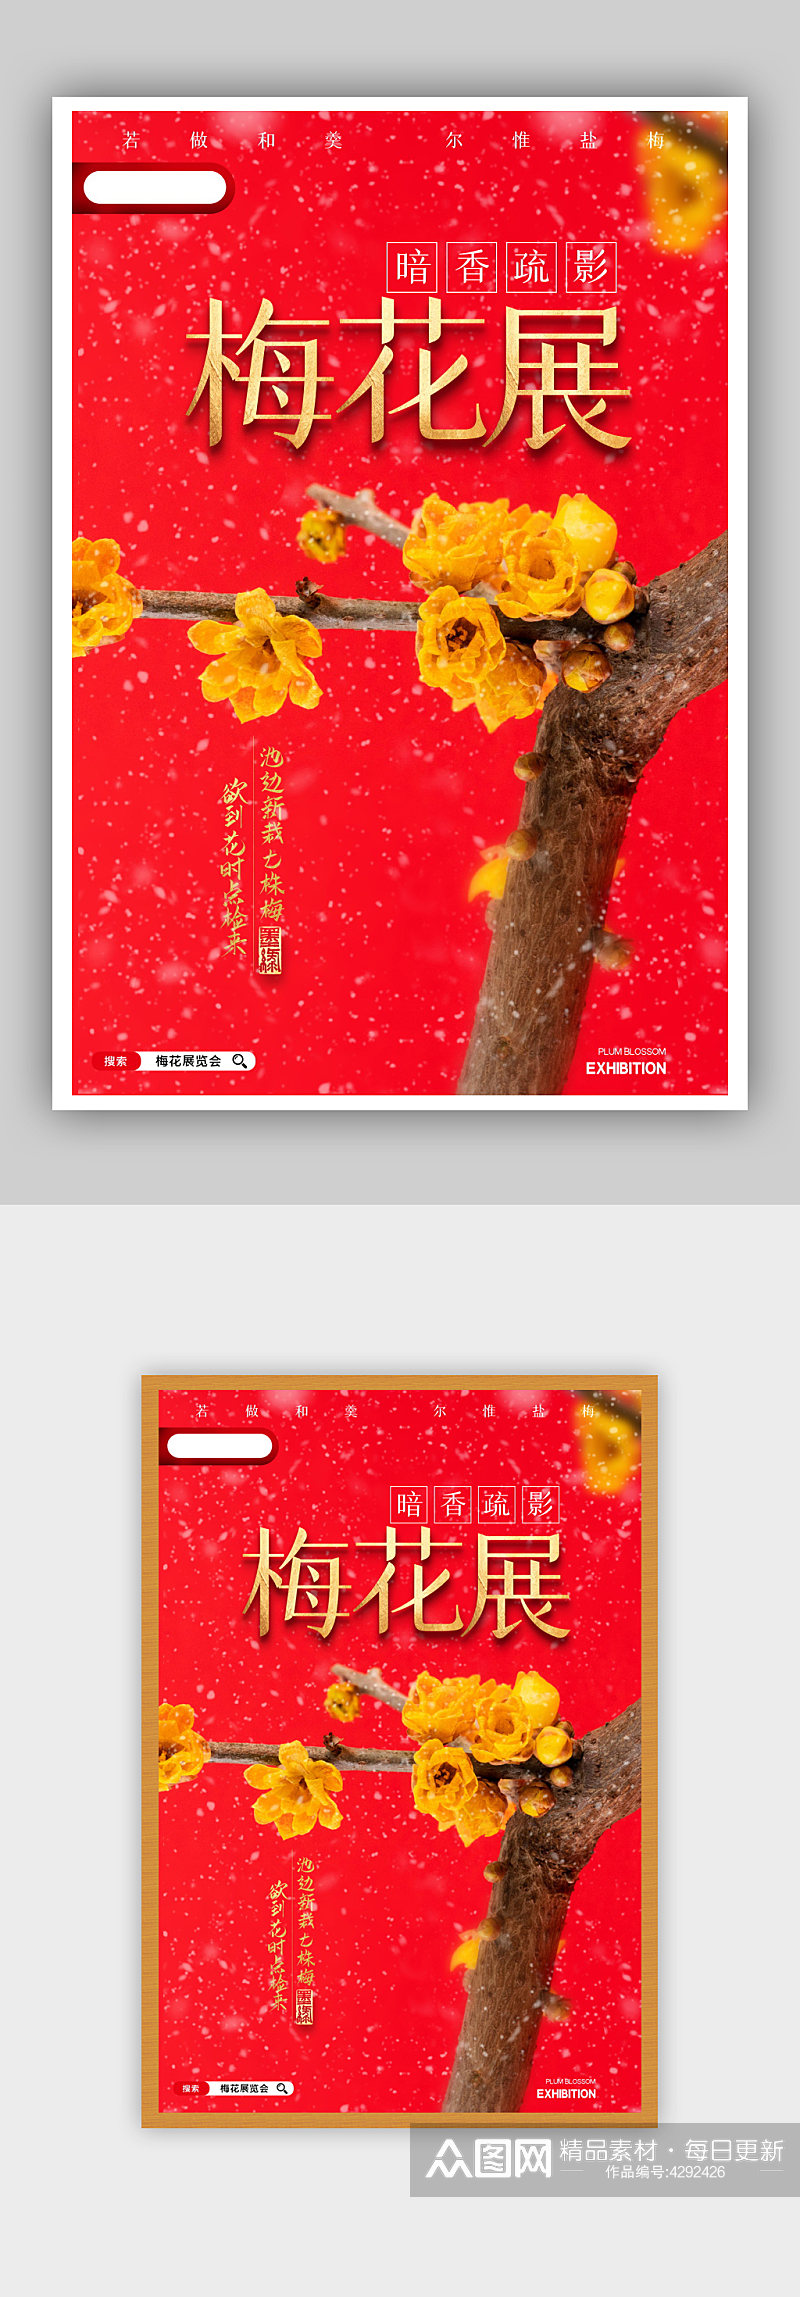 简约冬季梅花展览会宣传海报素材